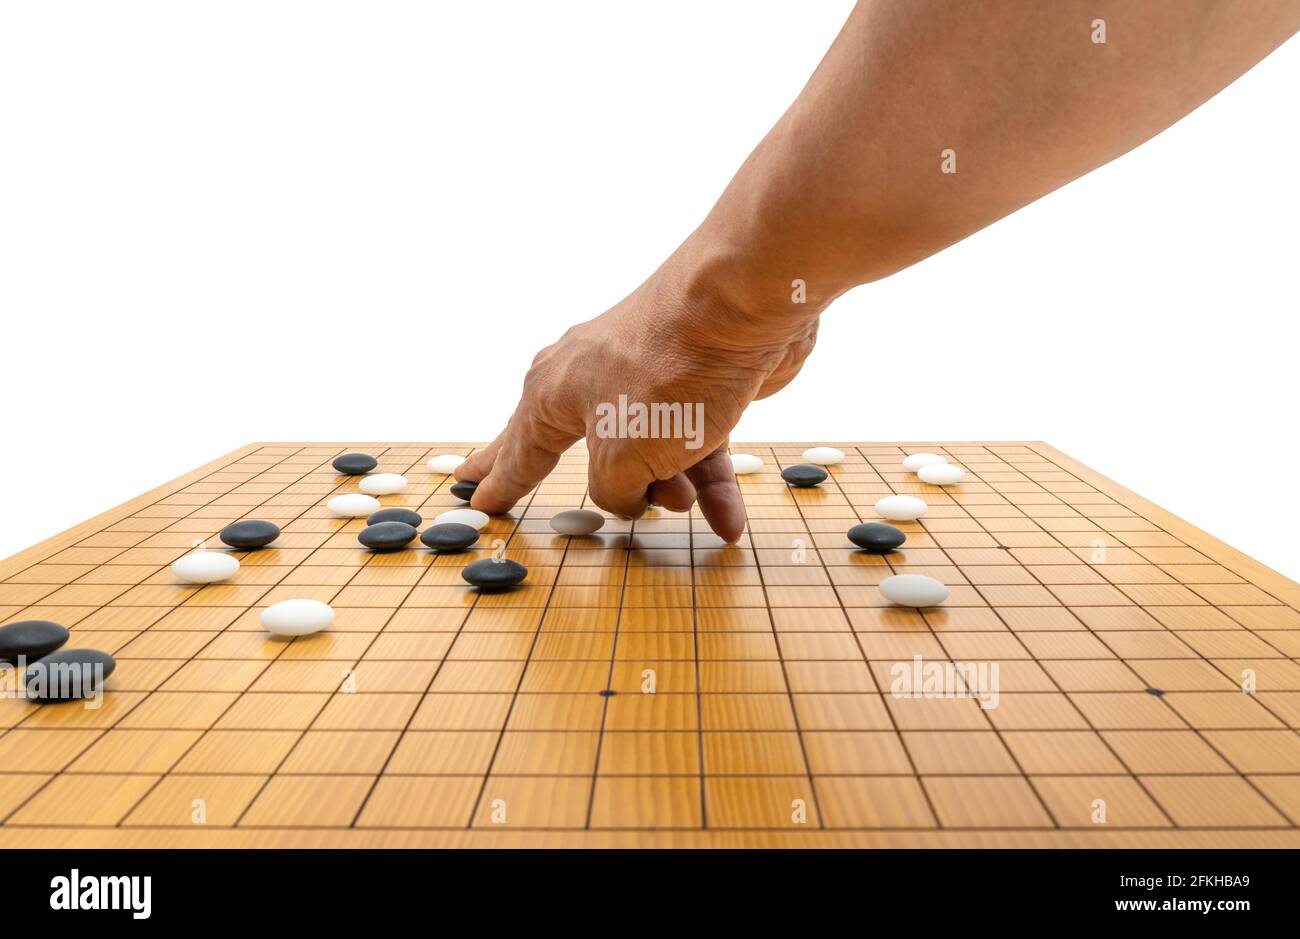 Resolver Fangoso Arte Juego de tablero de juego de la mano de Go o juego de tablero japonés del  ajedrez, utilice piedras negras y piedras blancas para crear territorio y  capturar a oponente. Imagen aislada